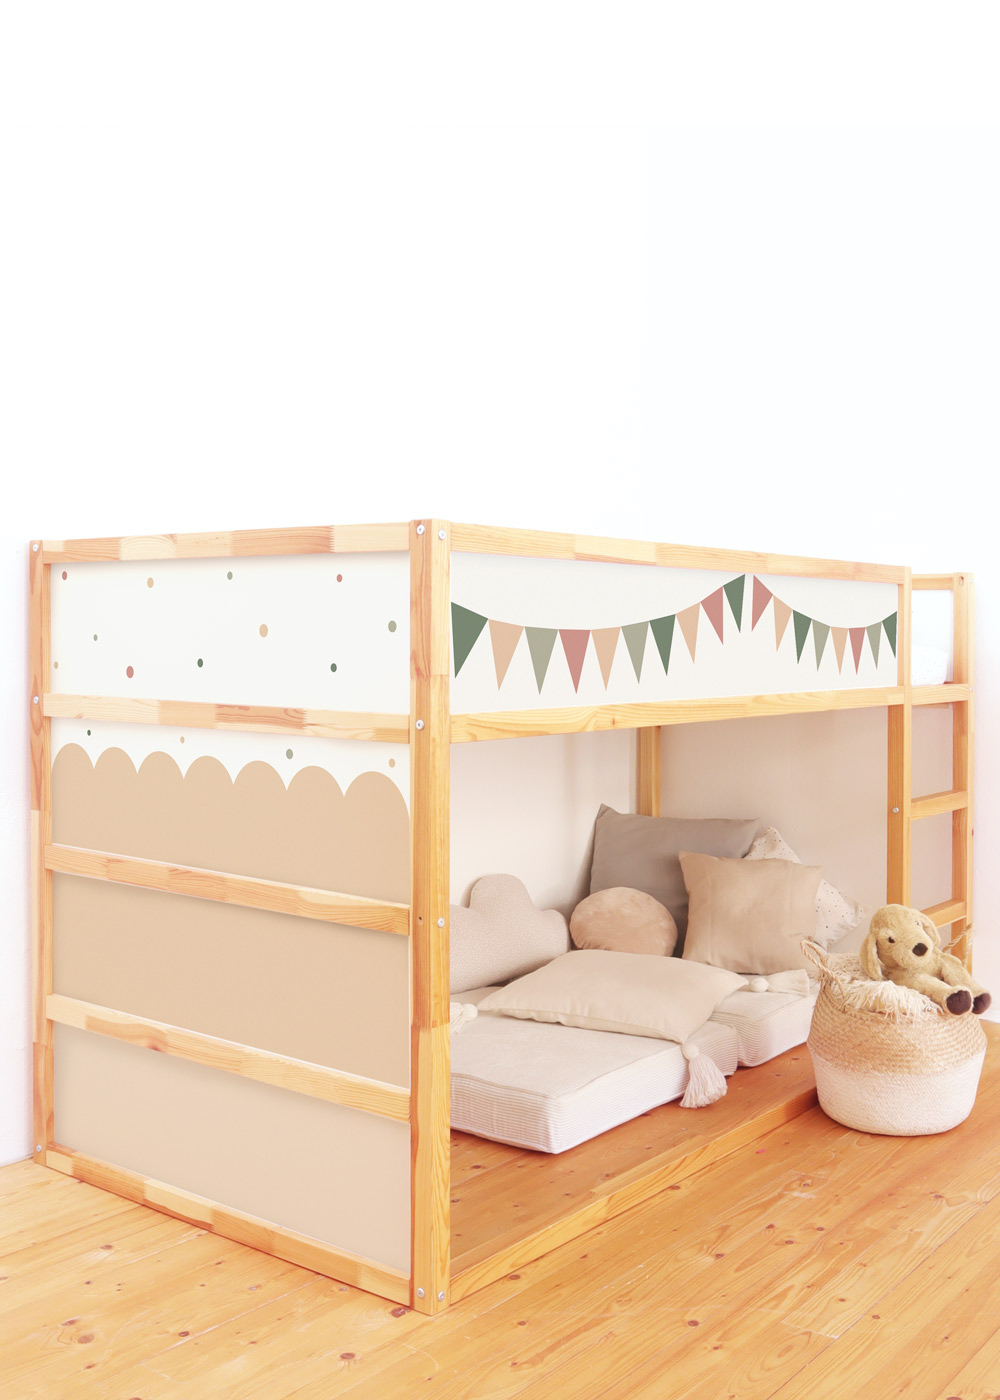  Plakfolie voor IKEA KURA bed - set van 5